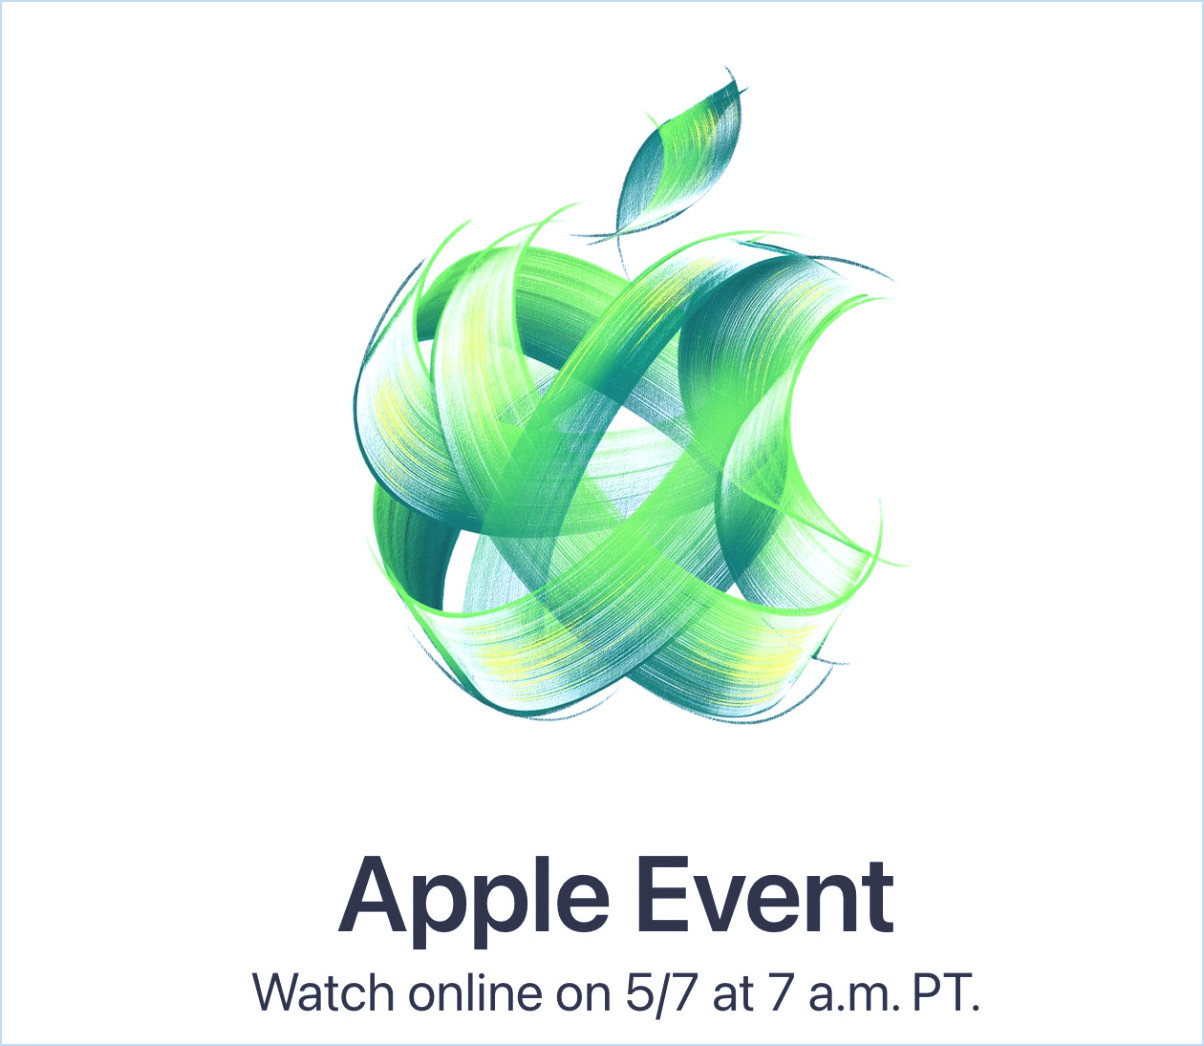 Événement Apple réglé pour le 7 mai